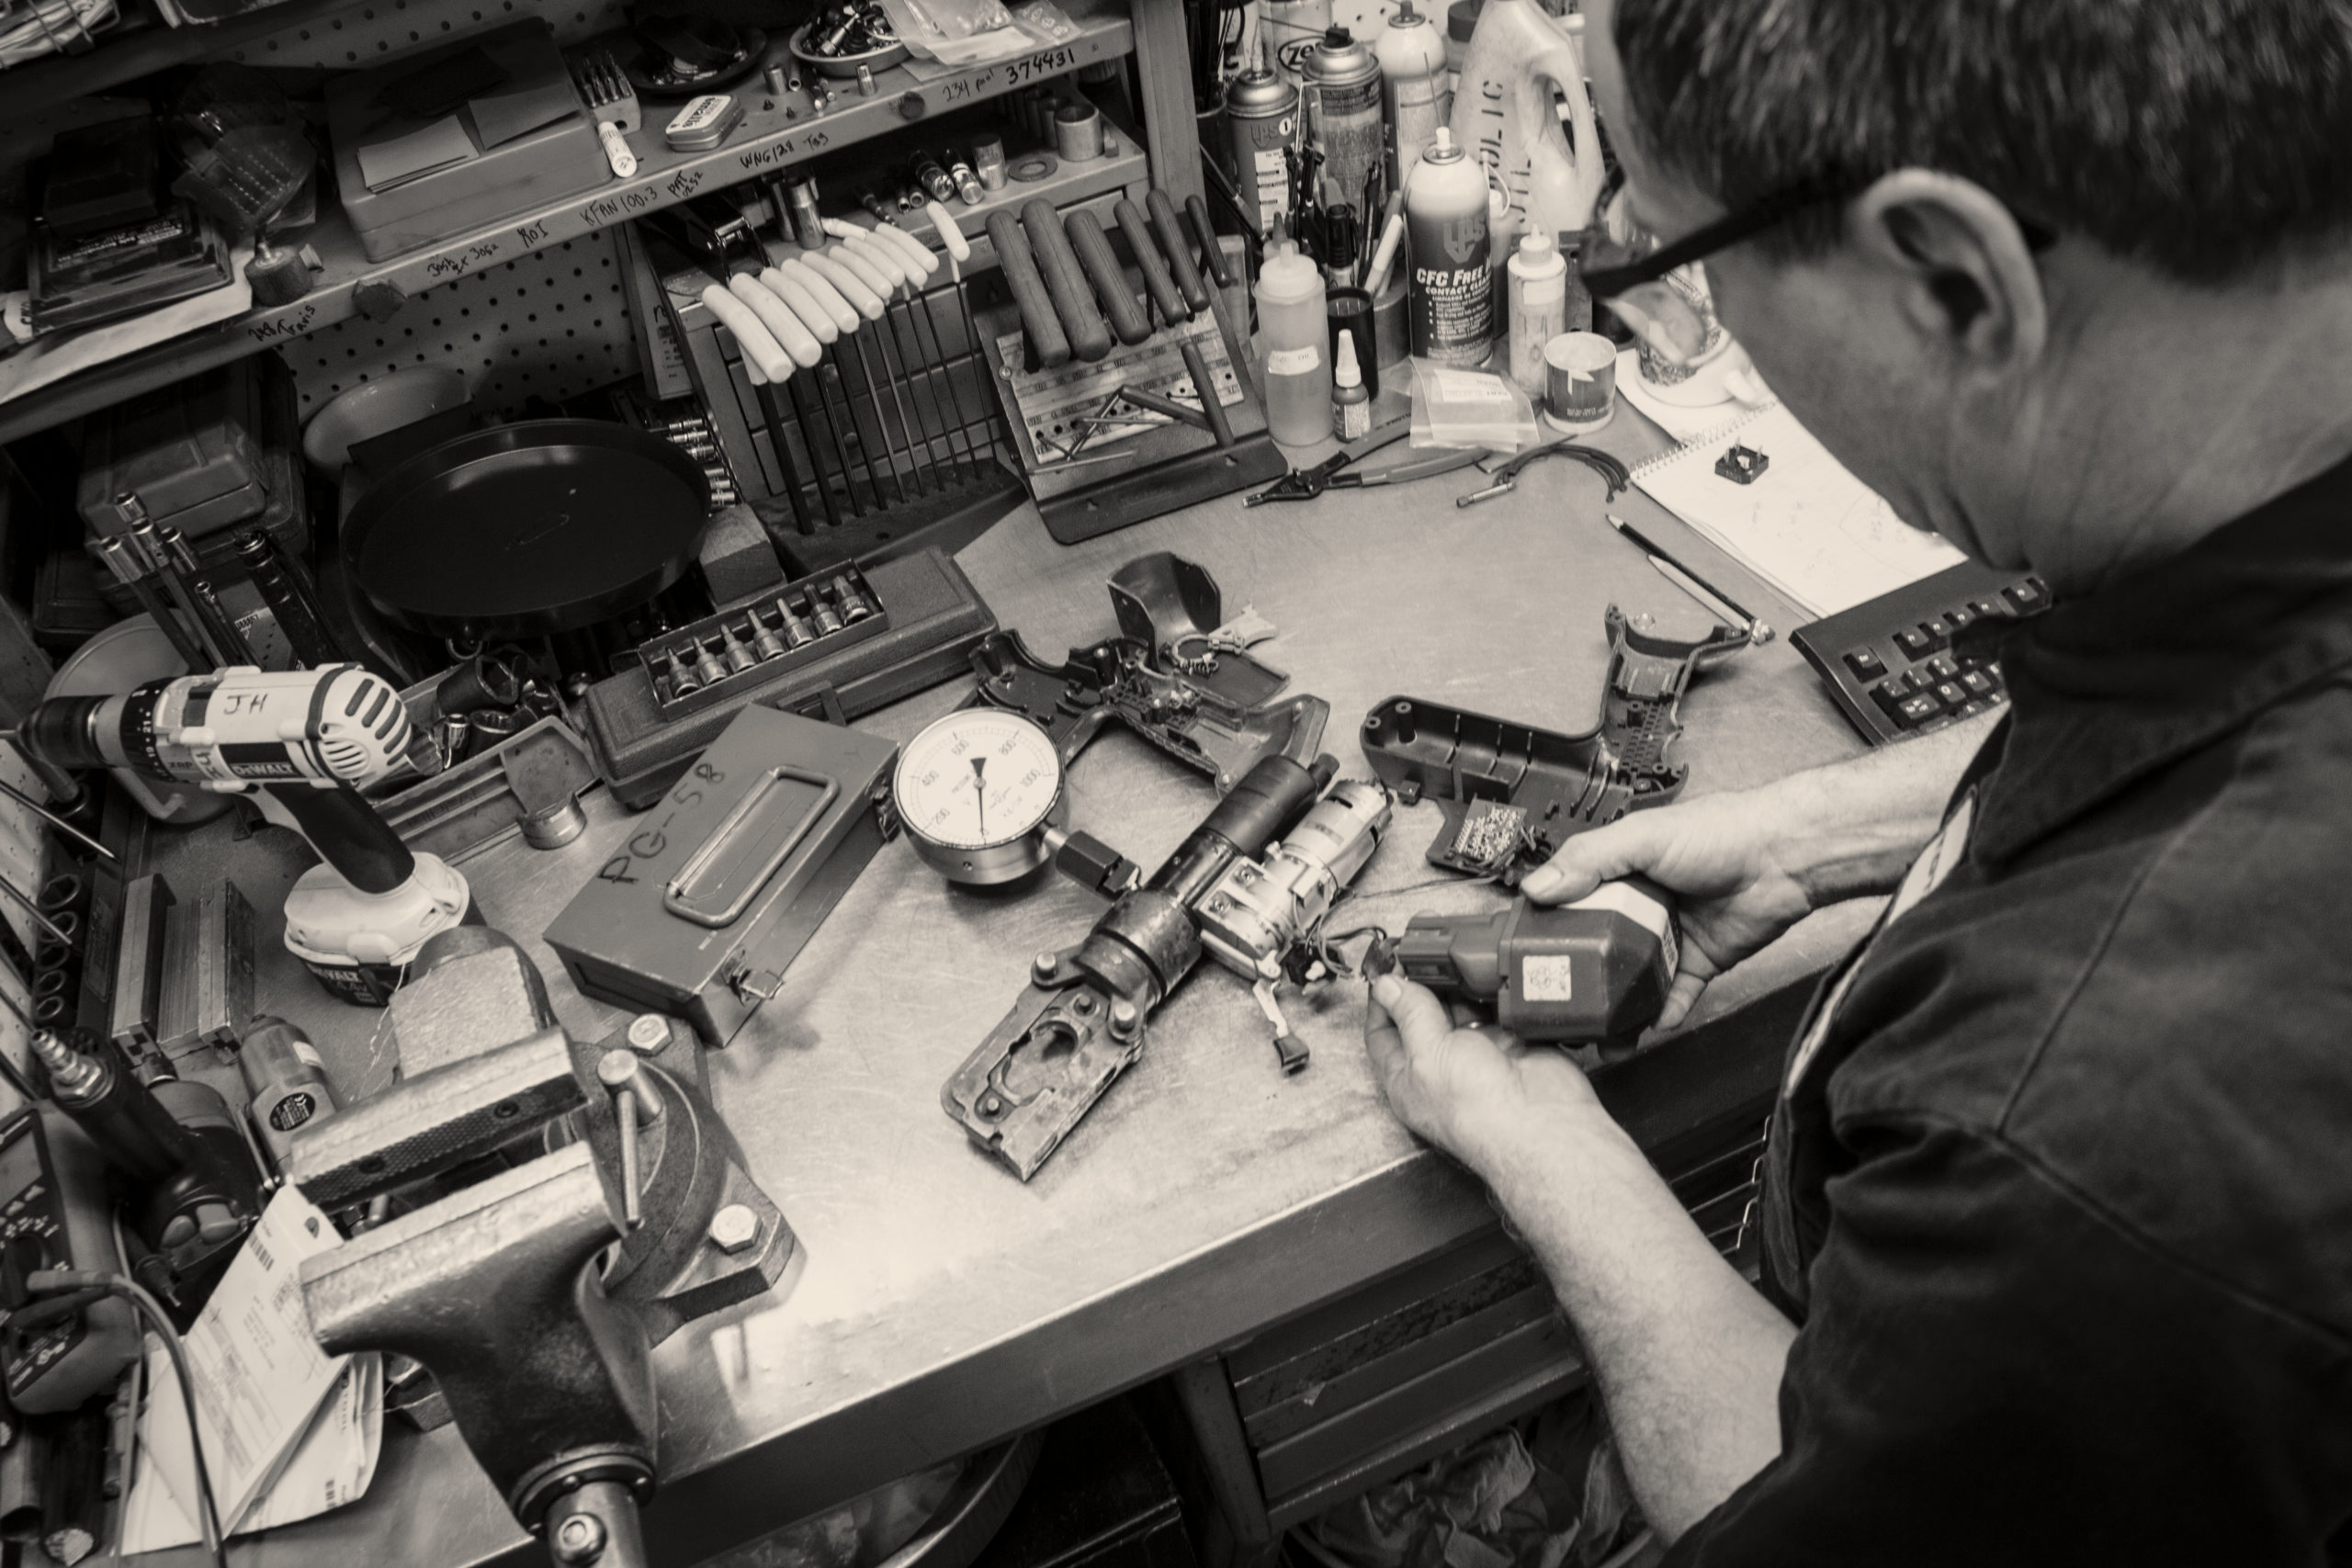 man conducting industrial tool repair on a worktable